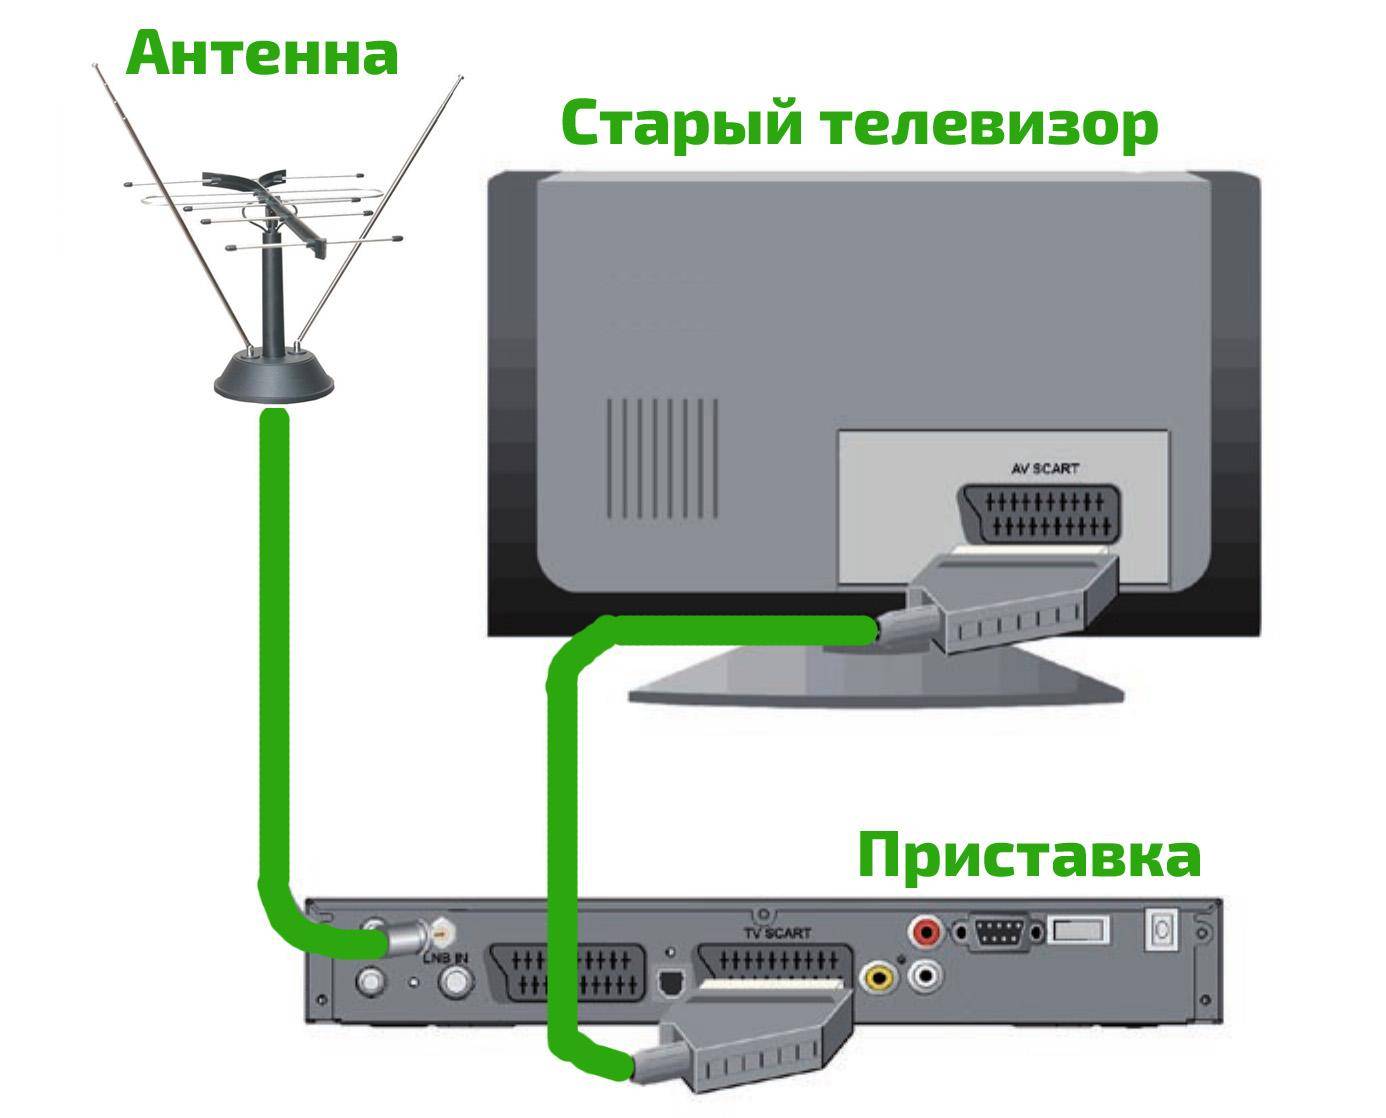 Как подключить старый телевизор к цифровому телевидению - инструкция тарифкин.ру
как подключить старый телевизор к цифровому телевидению - инструкция